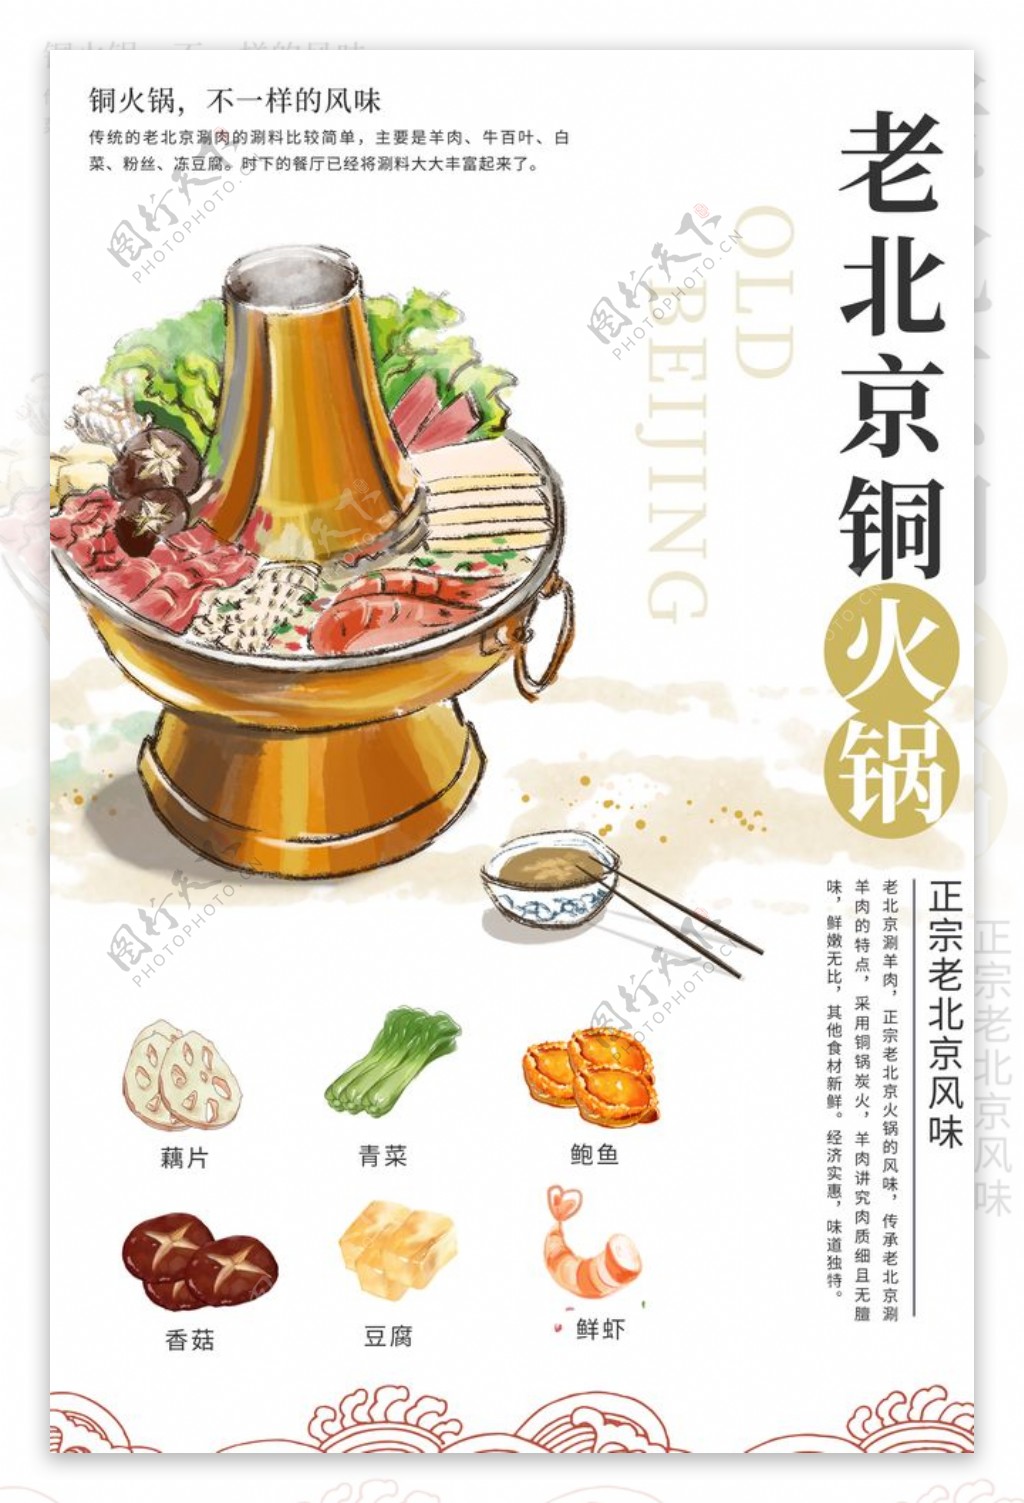 老北京火锅美食活动宣传海报图片